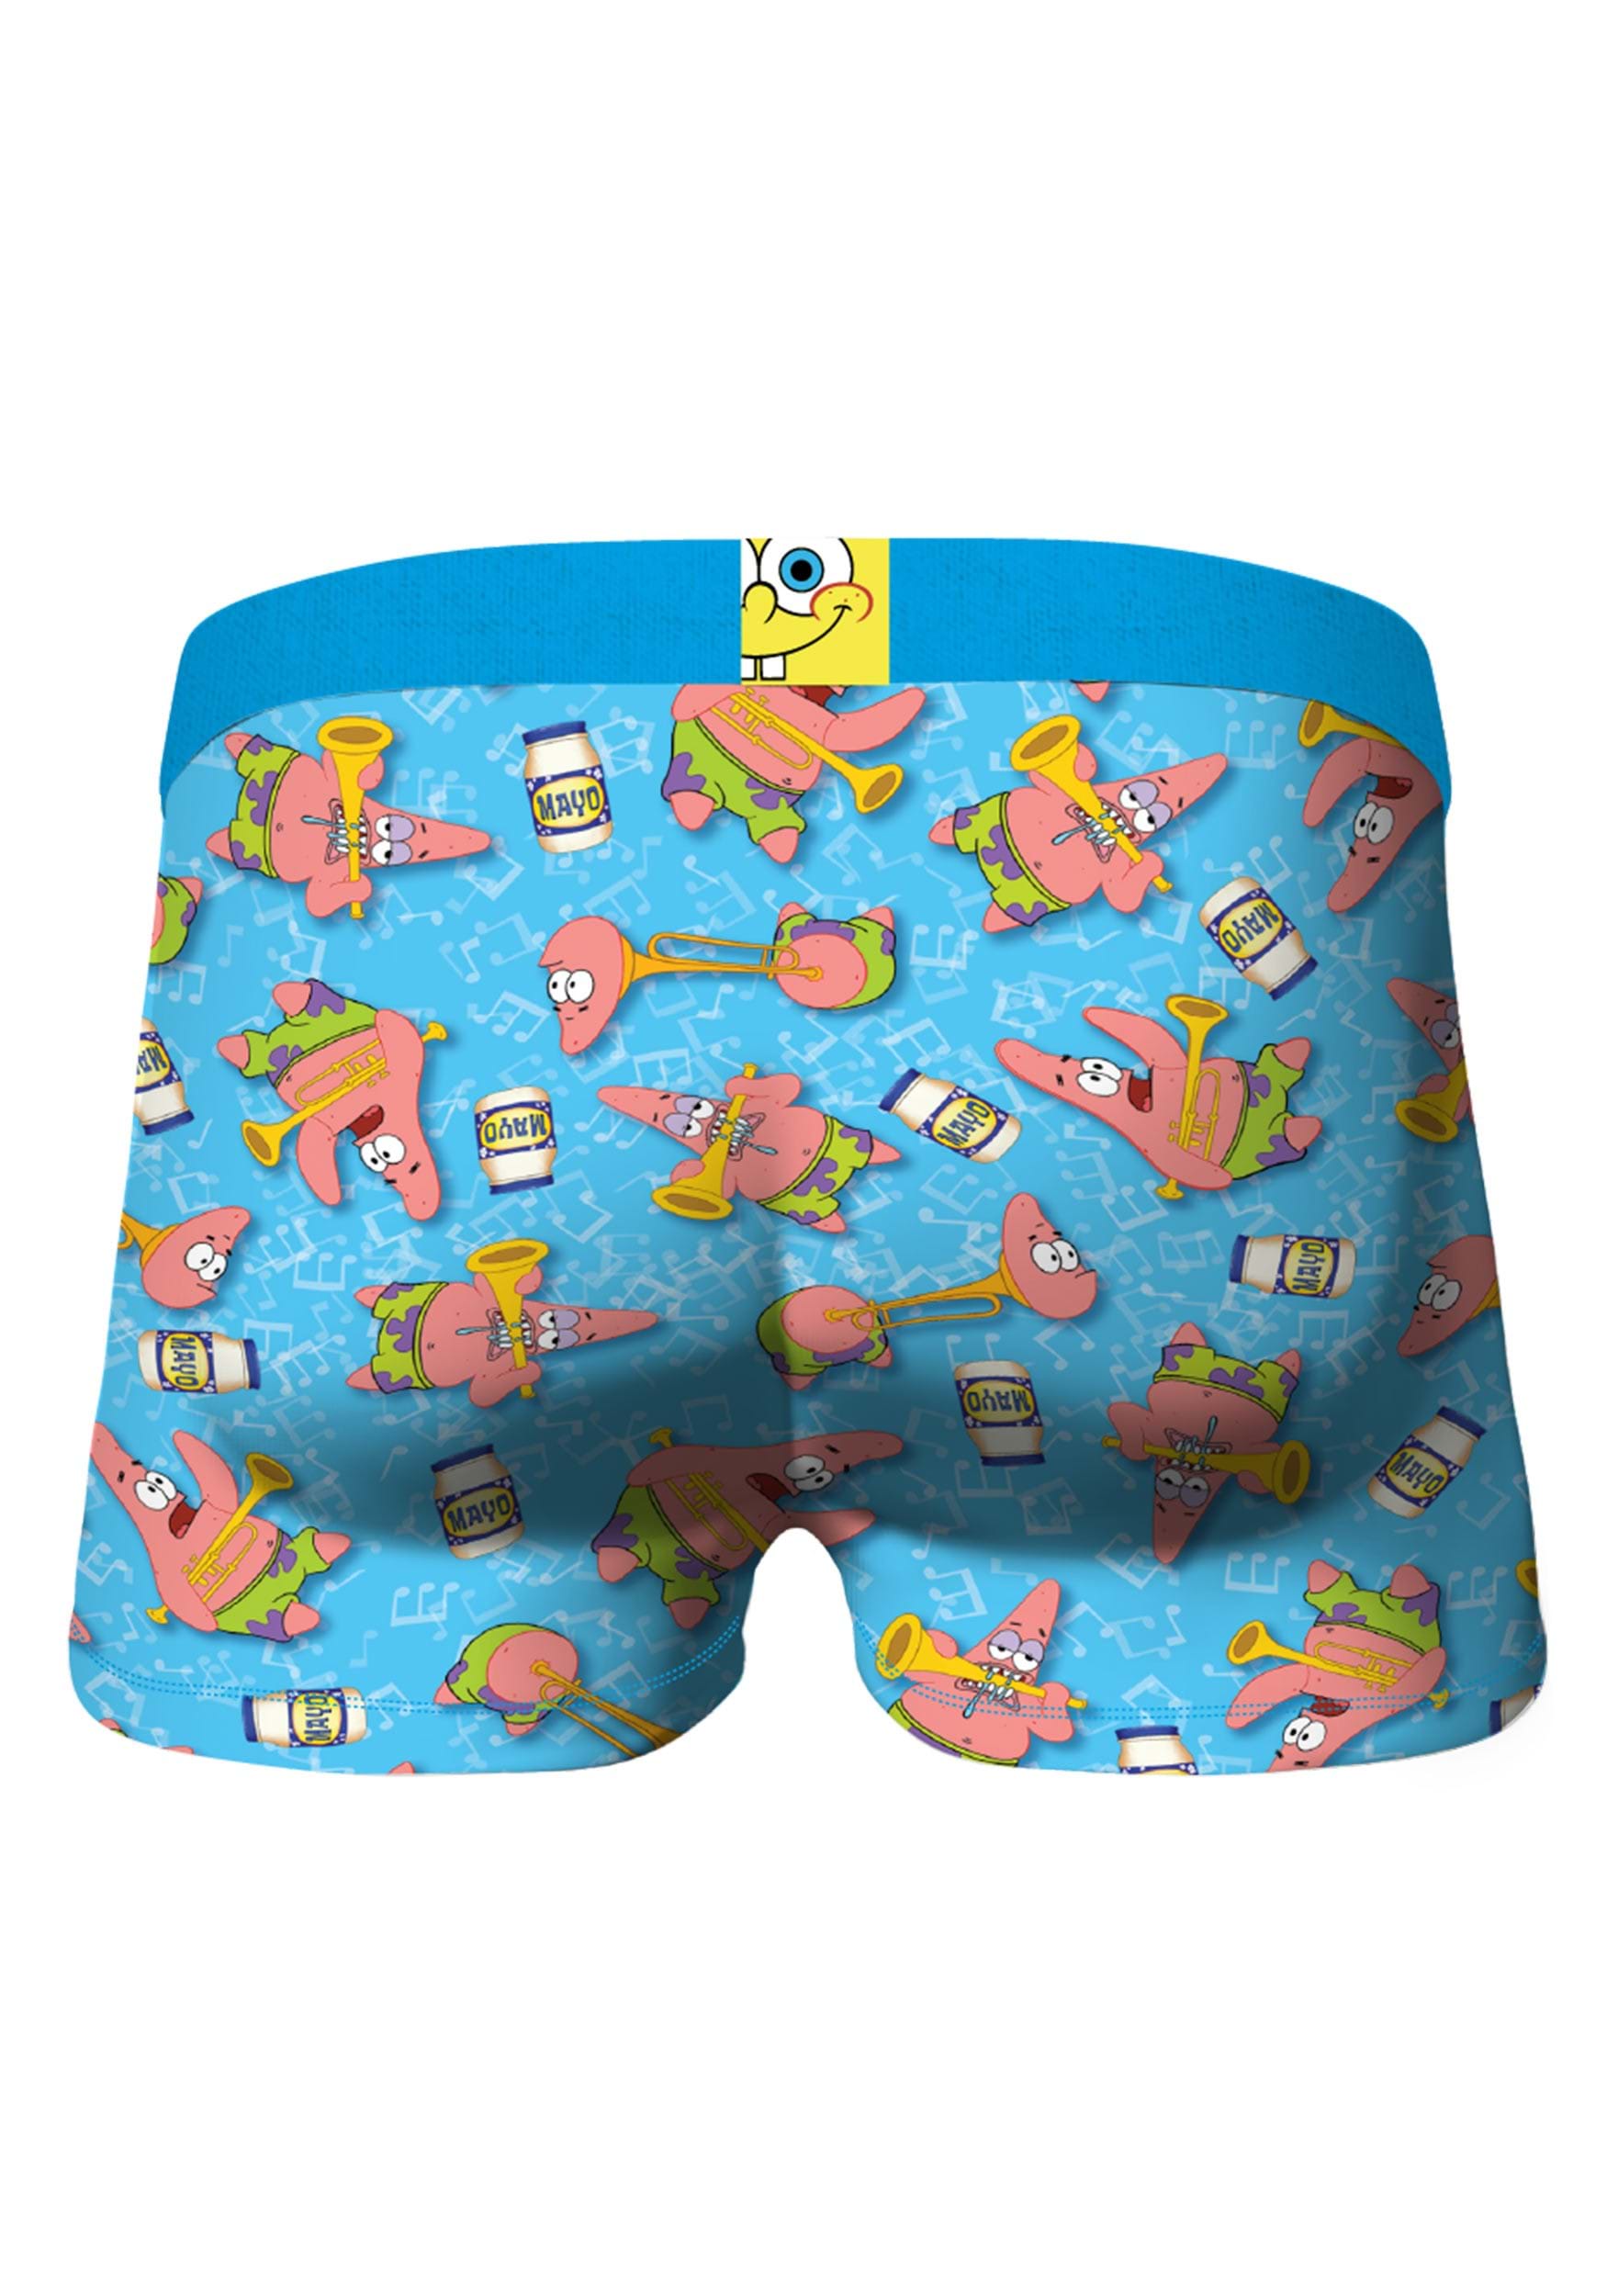 Spongebob Squarepants Boxer Briefs 3-Pack Underwear For Boys Size 10 ...